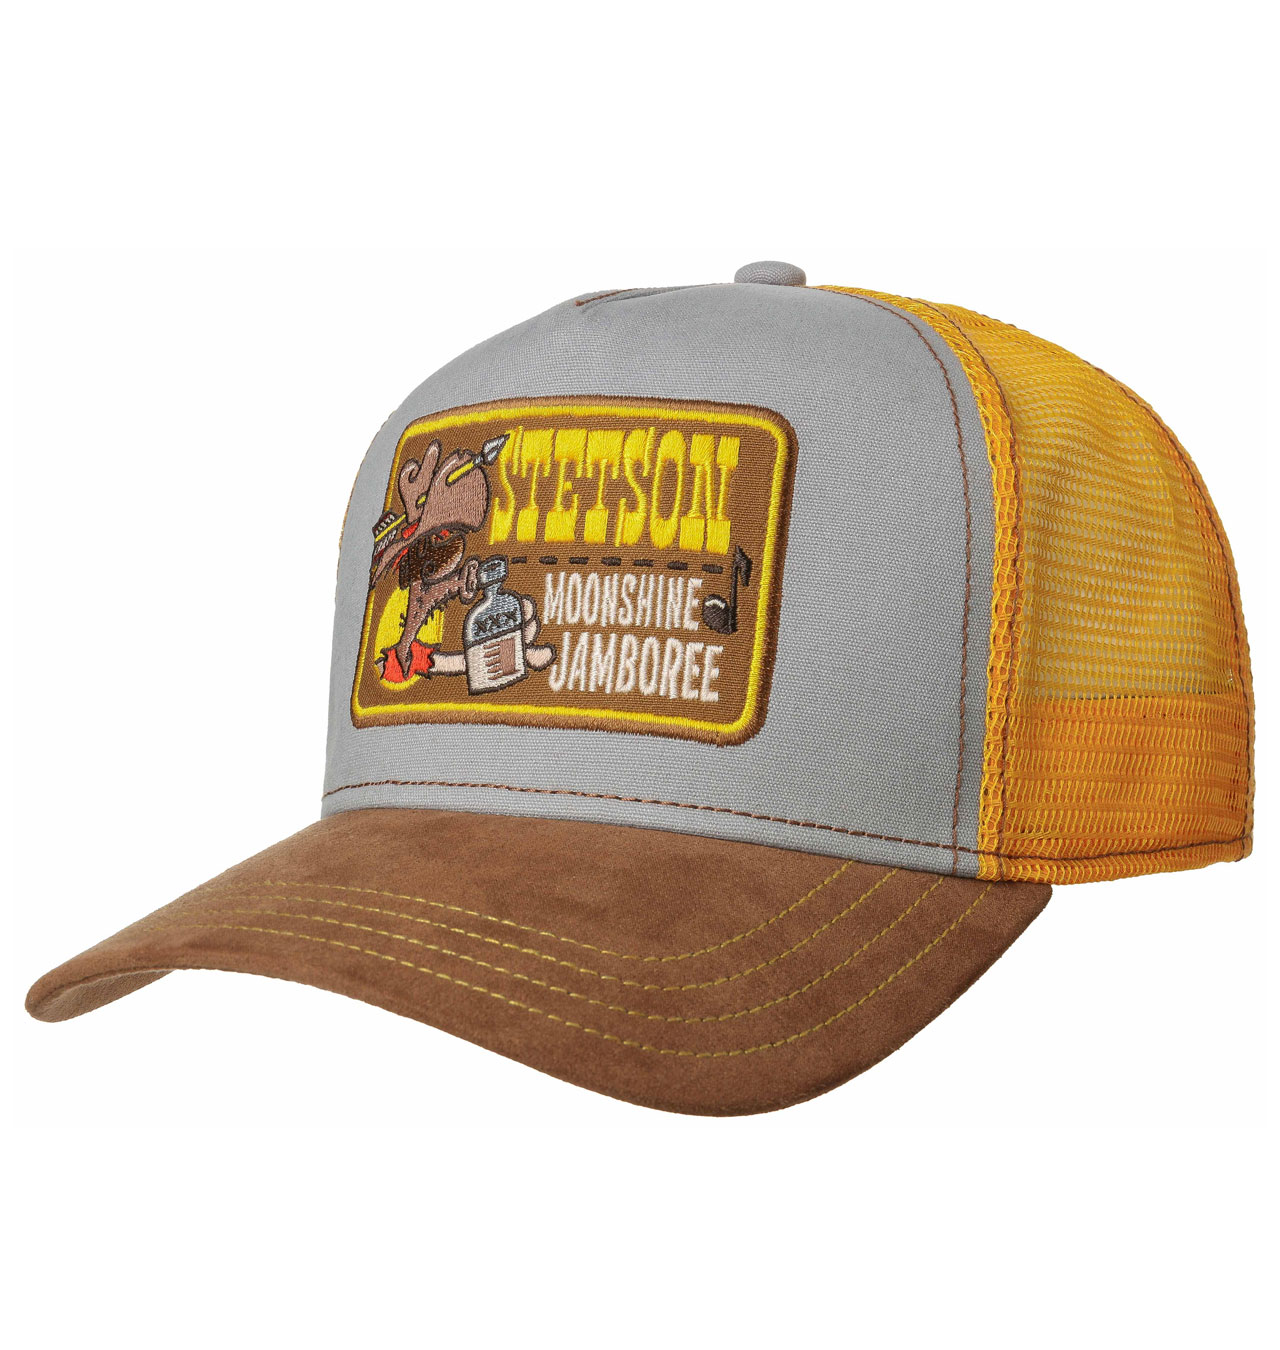 Stetson - Moonshine Jamboree Trucker Cap - Yellow 